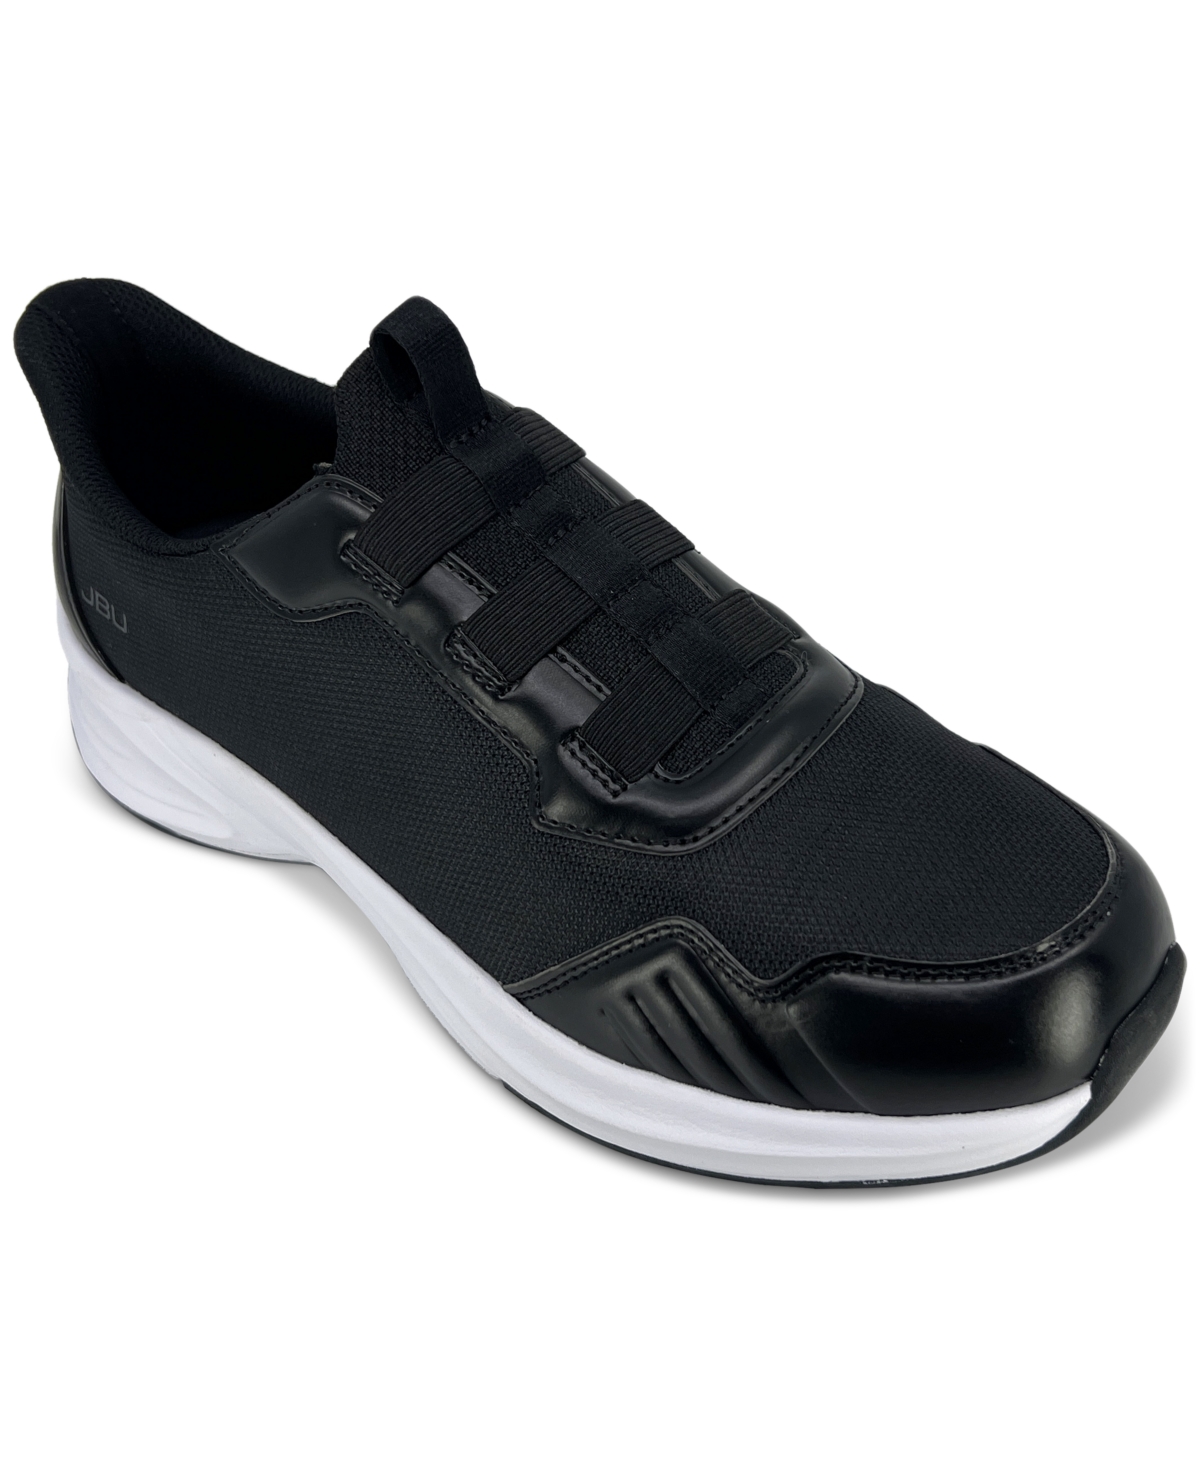 Men's Dash Touch-Less Slip-On Sneakers - Black/White